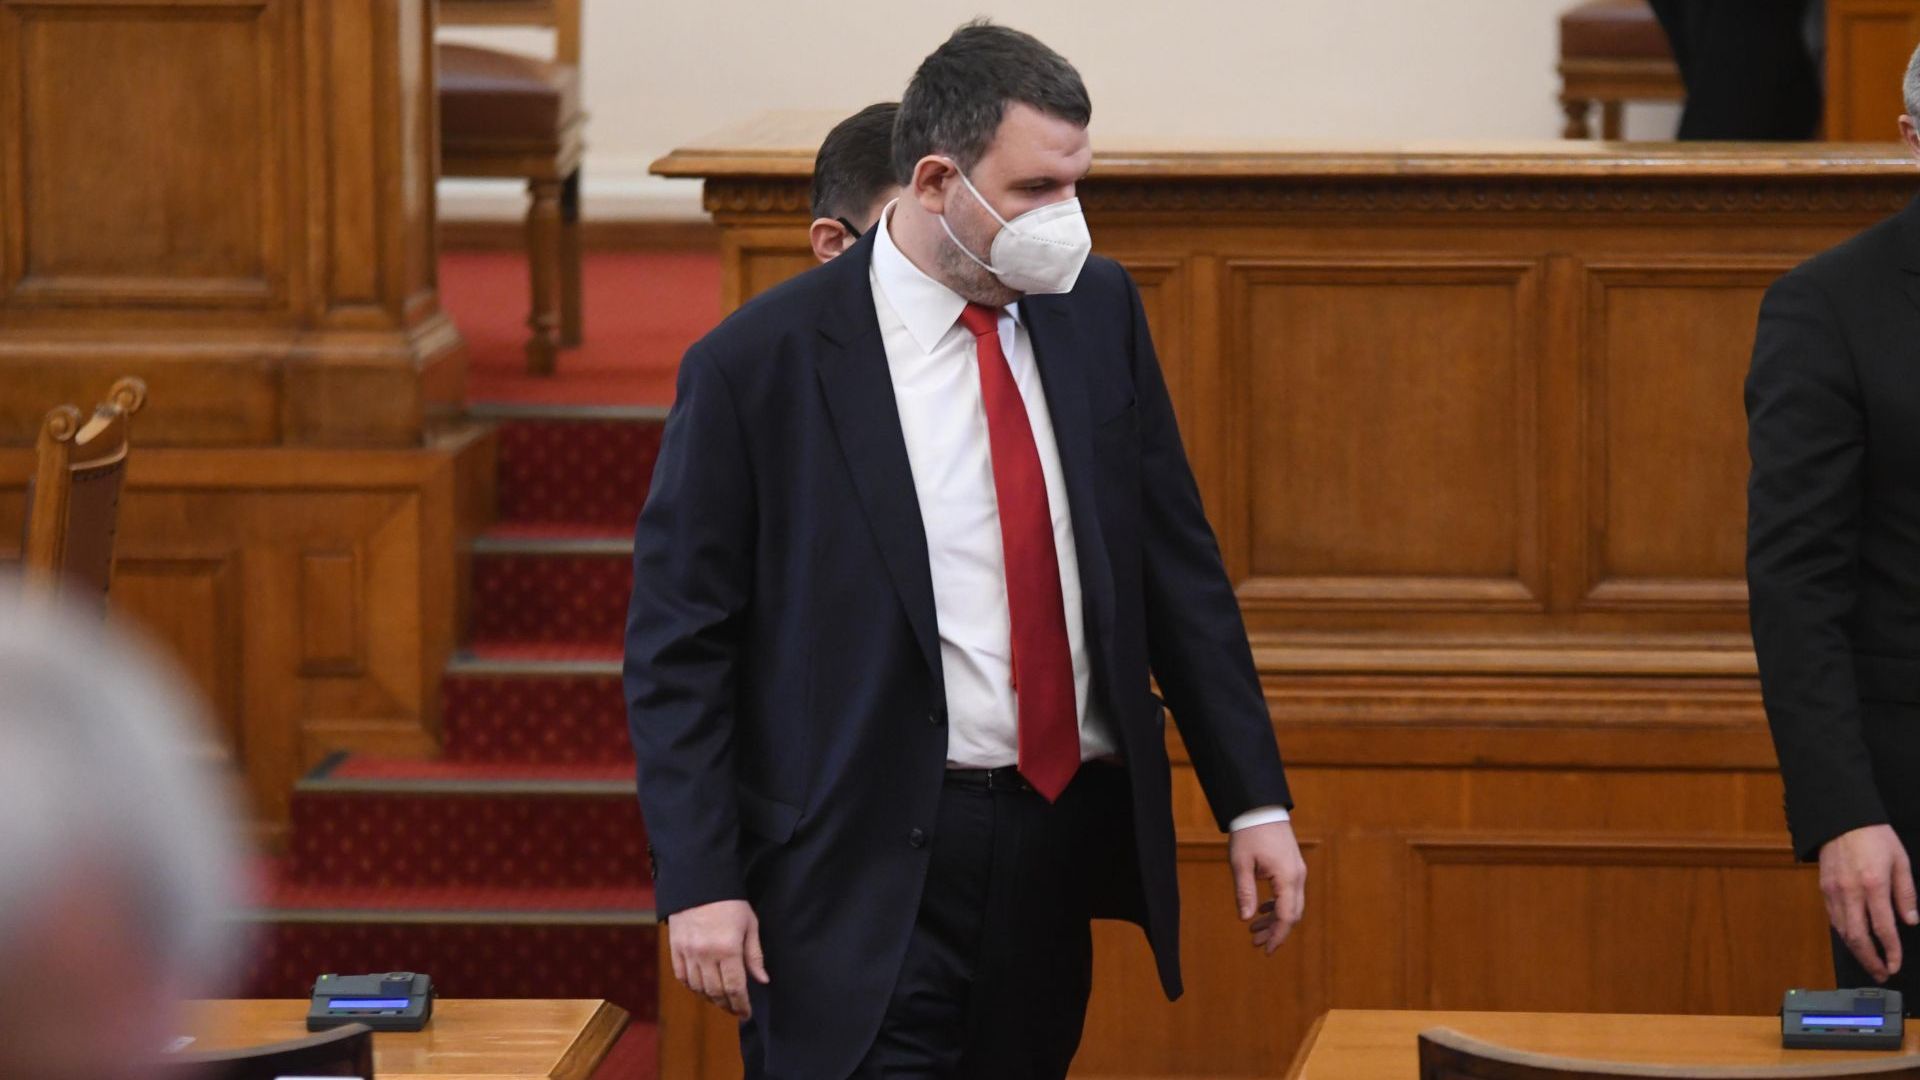 Делян Пеевски: Лъжите на министър Василев преминаха границата на нормалността